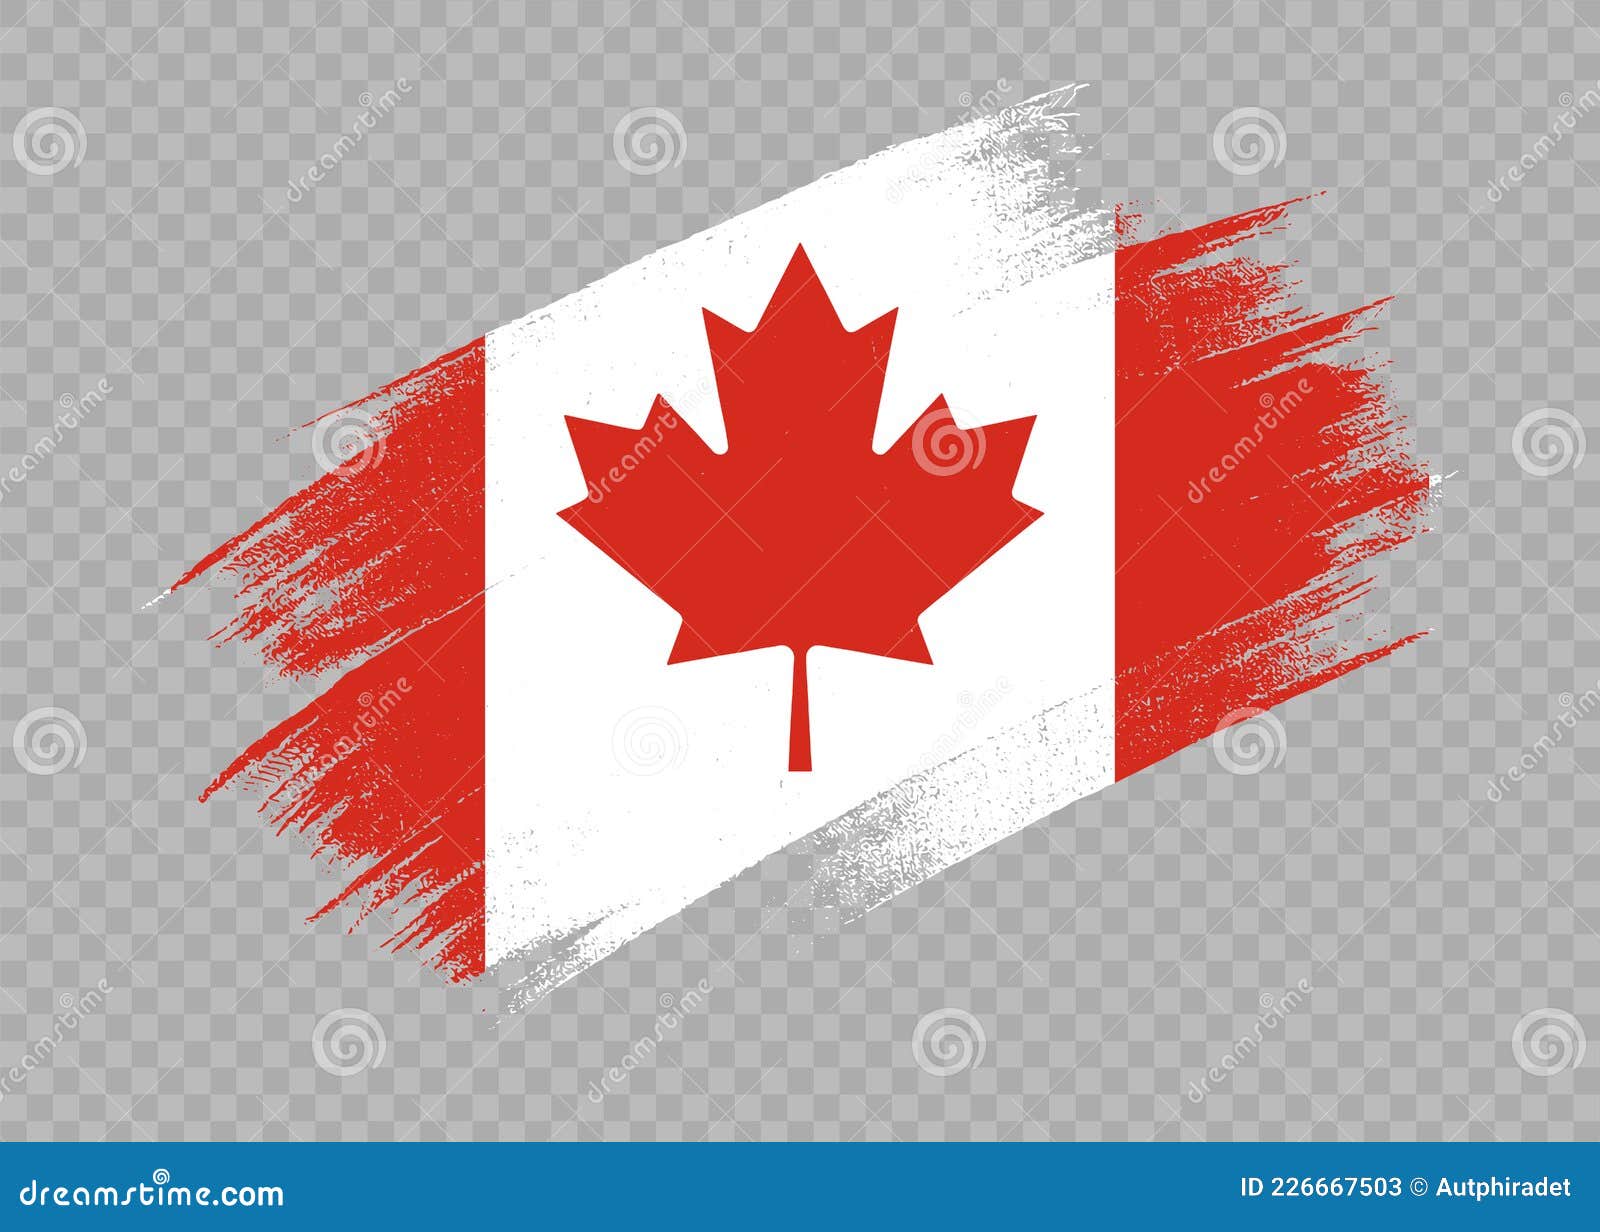 Cờ Canada - Một biểu tượng của hòa bình và sự Đoàn Kết. Với nền đỏ phía trên và dưới, lá phong ở giữa, cờ Canada là mẫu cờ nổi tiếng trên thế giới. Hãy cùng chiêm ngưỡng hình ảnh về cờ Canada để cảm nhận nét đẹp và ý nghĩa của quốc kỳ này.